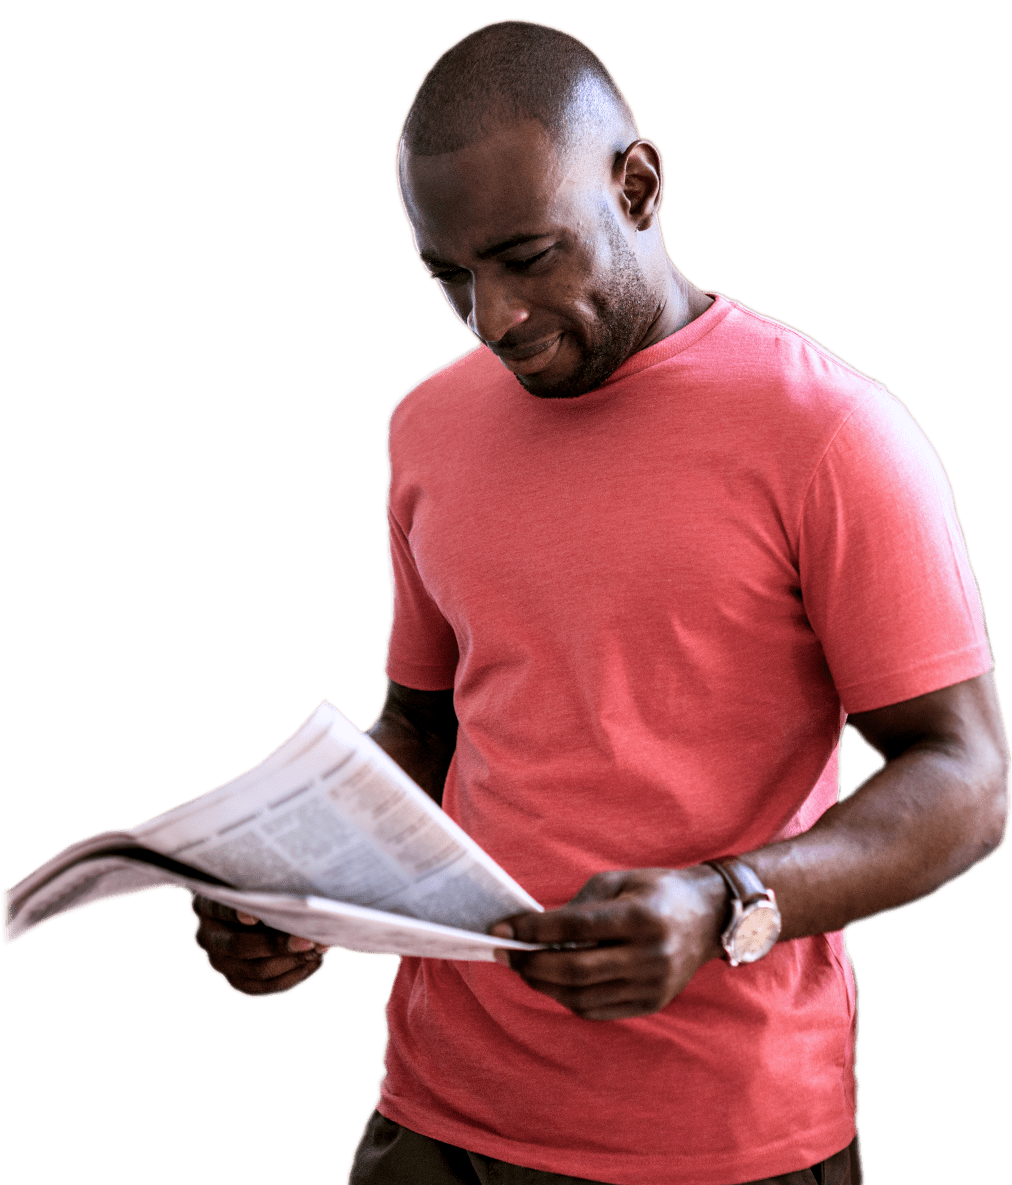 A Man Reading A Newspaper